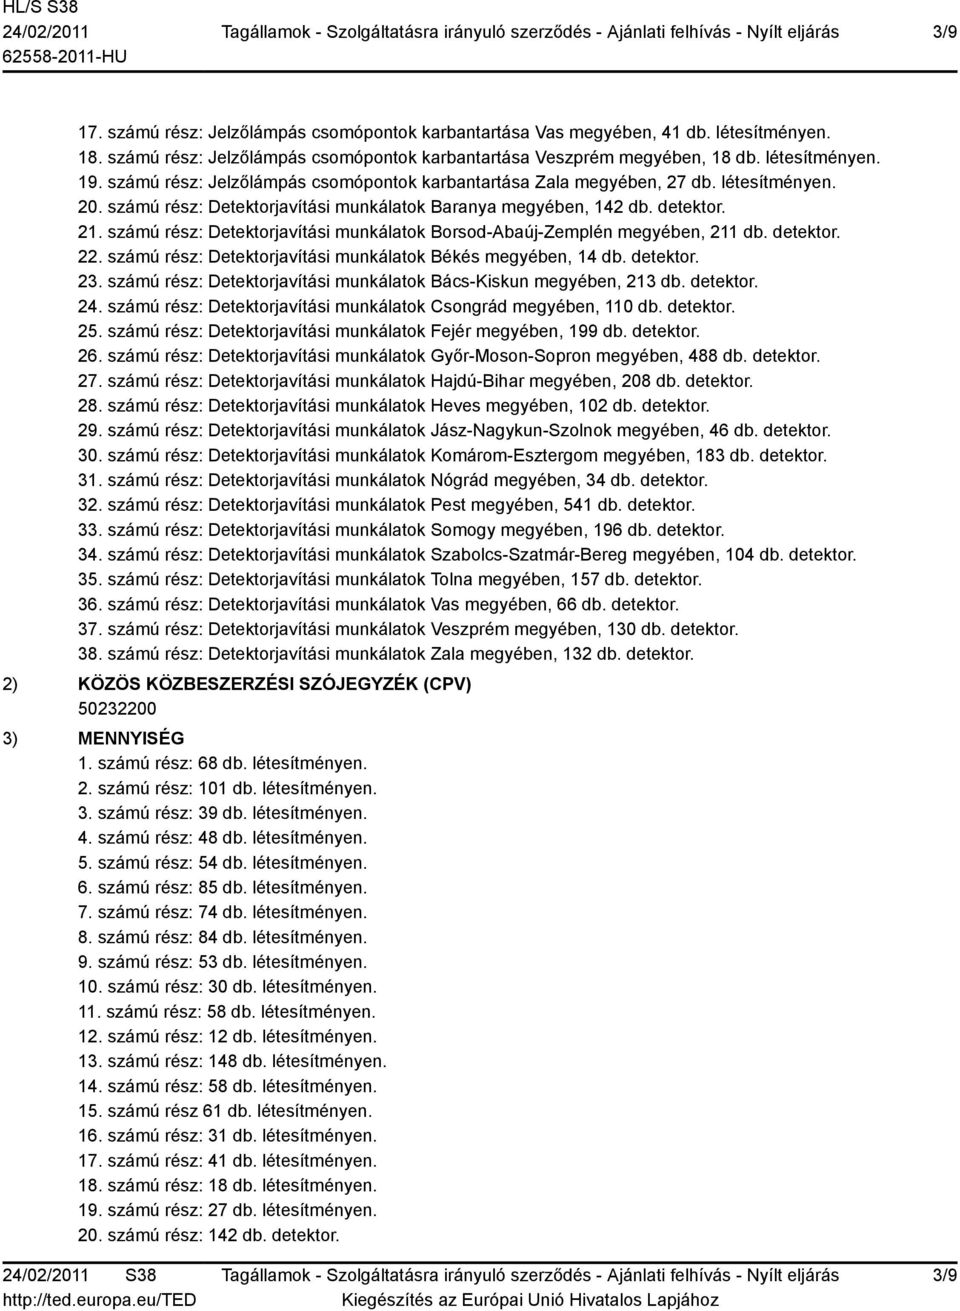 számú rész: Detektorjavítási munkálatok Borsod-Abaúj-Zemplén megyében, 211 db. detektor. 22. számú rész: Detektorjavítási munkálatok Békés megyében, 14 db. detektor. 23.